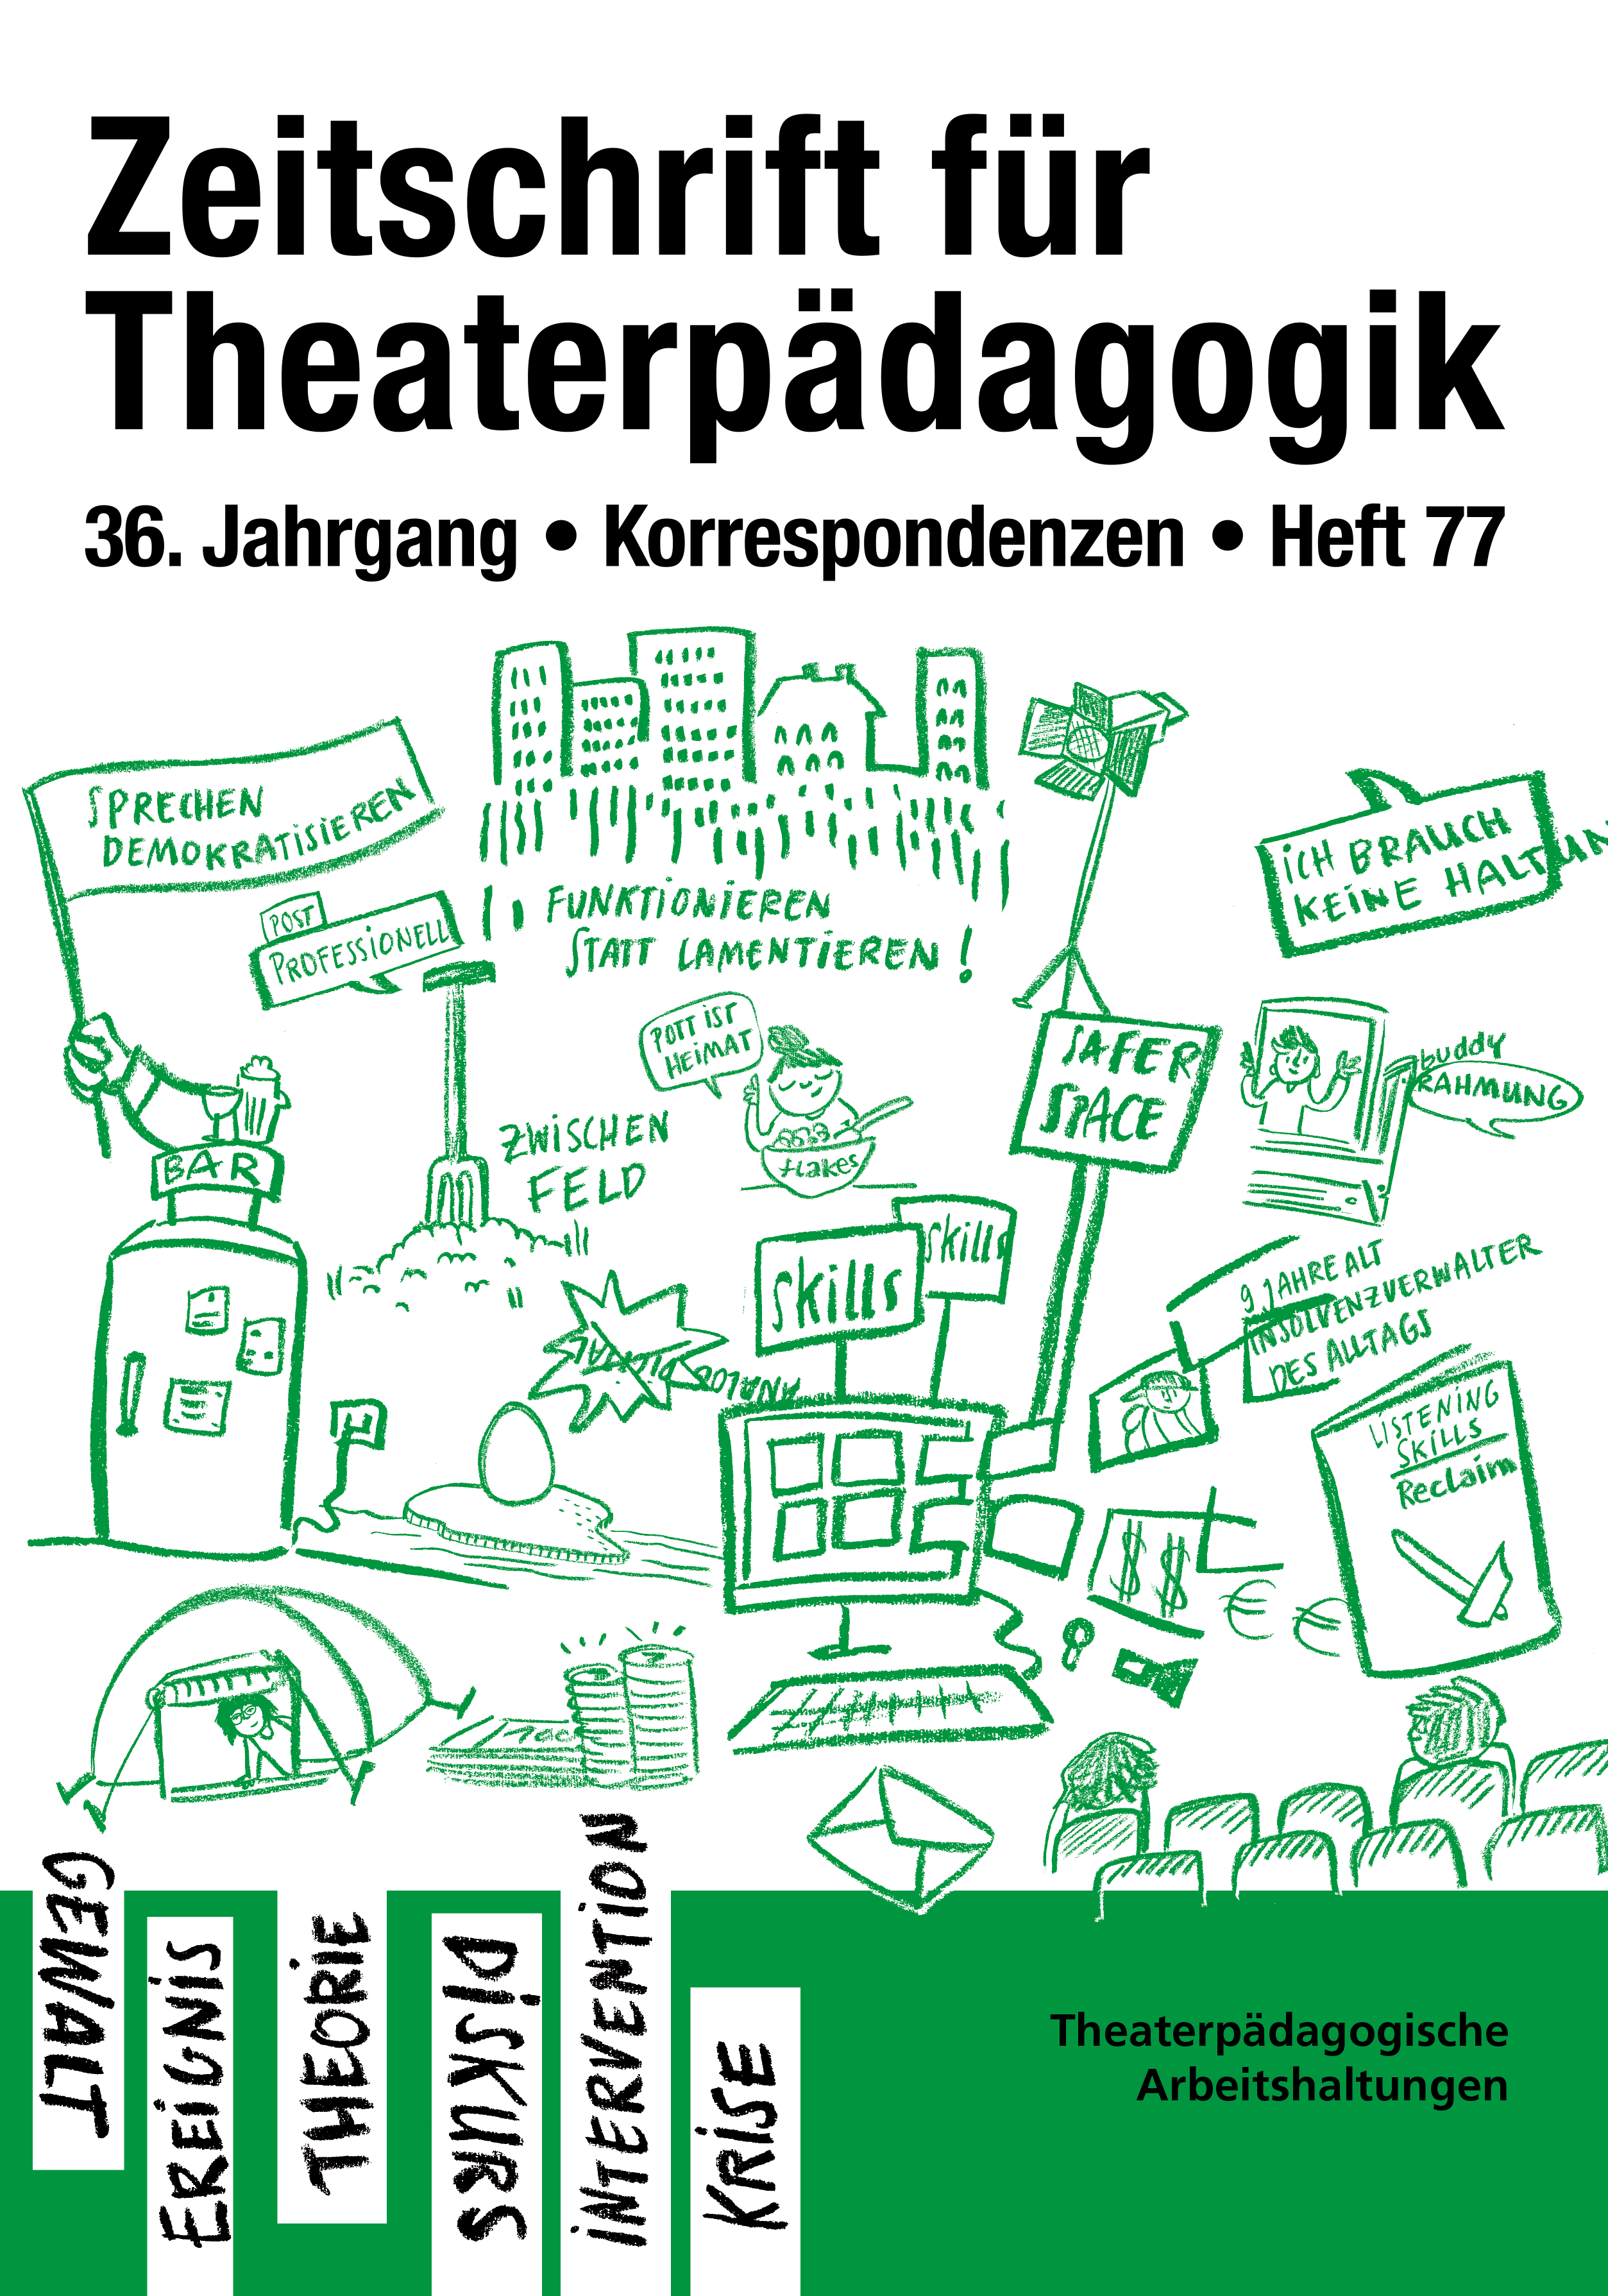 Heft 77: Gesellschaftliche Herausforderungen - Theaterpädagogische Arbeitshaltungen